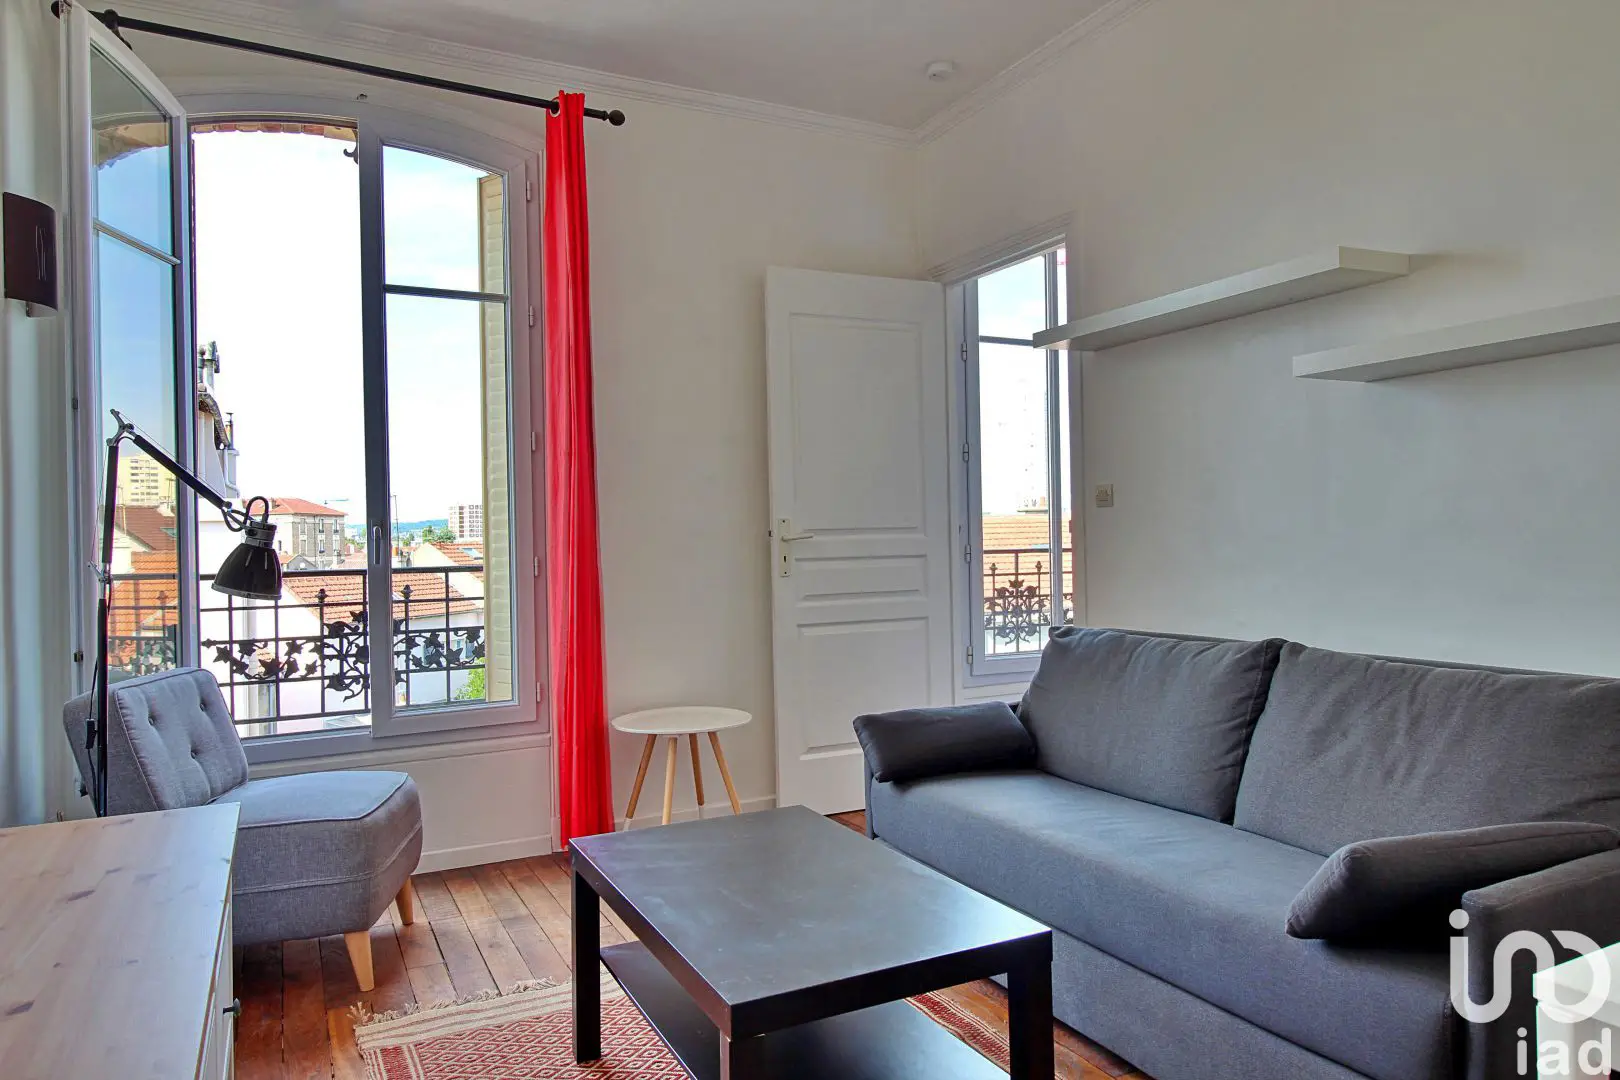 Location appartement meublé 2 pièces 36 m2